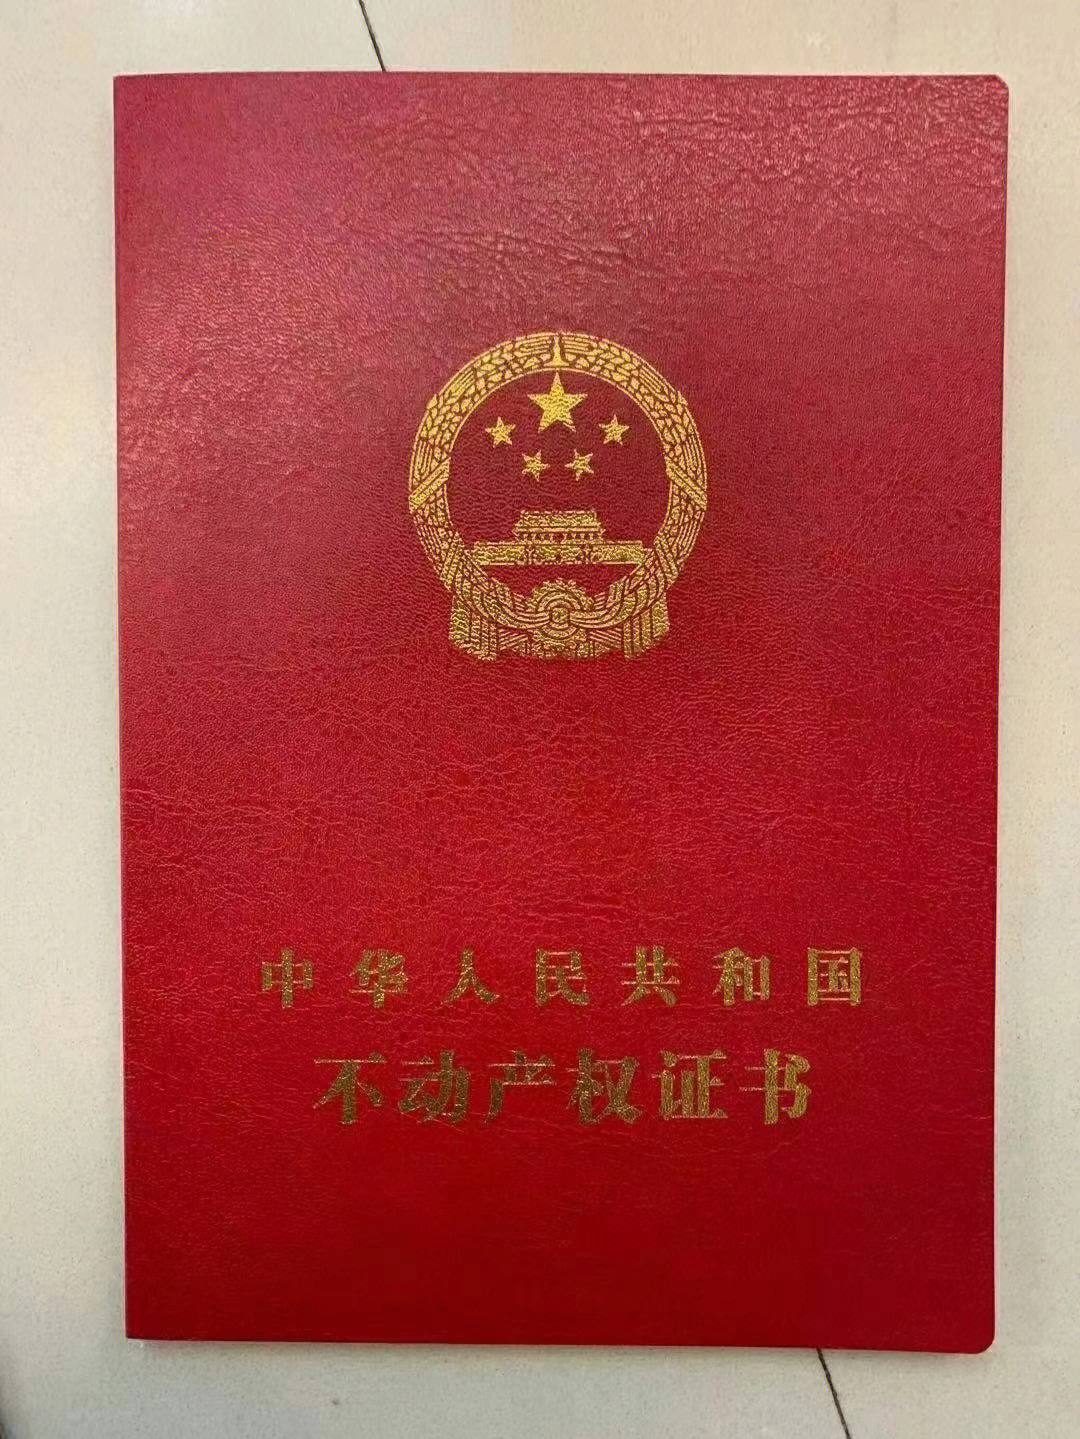 广州车位产权证图片图片